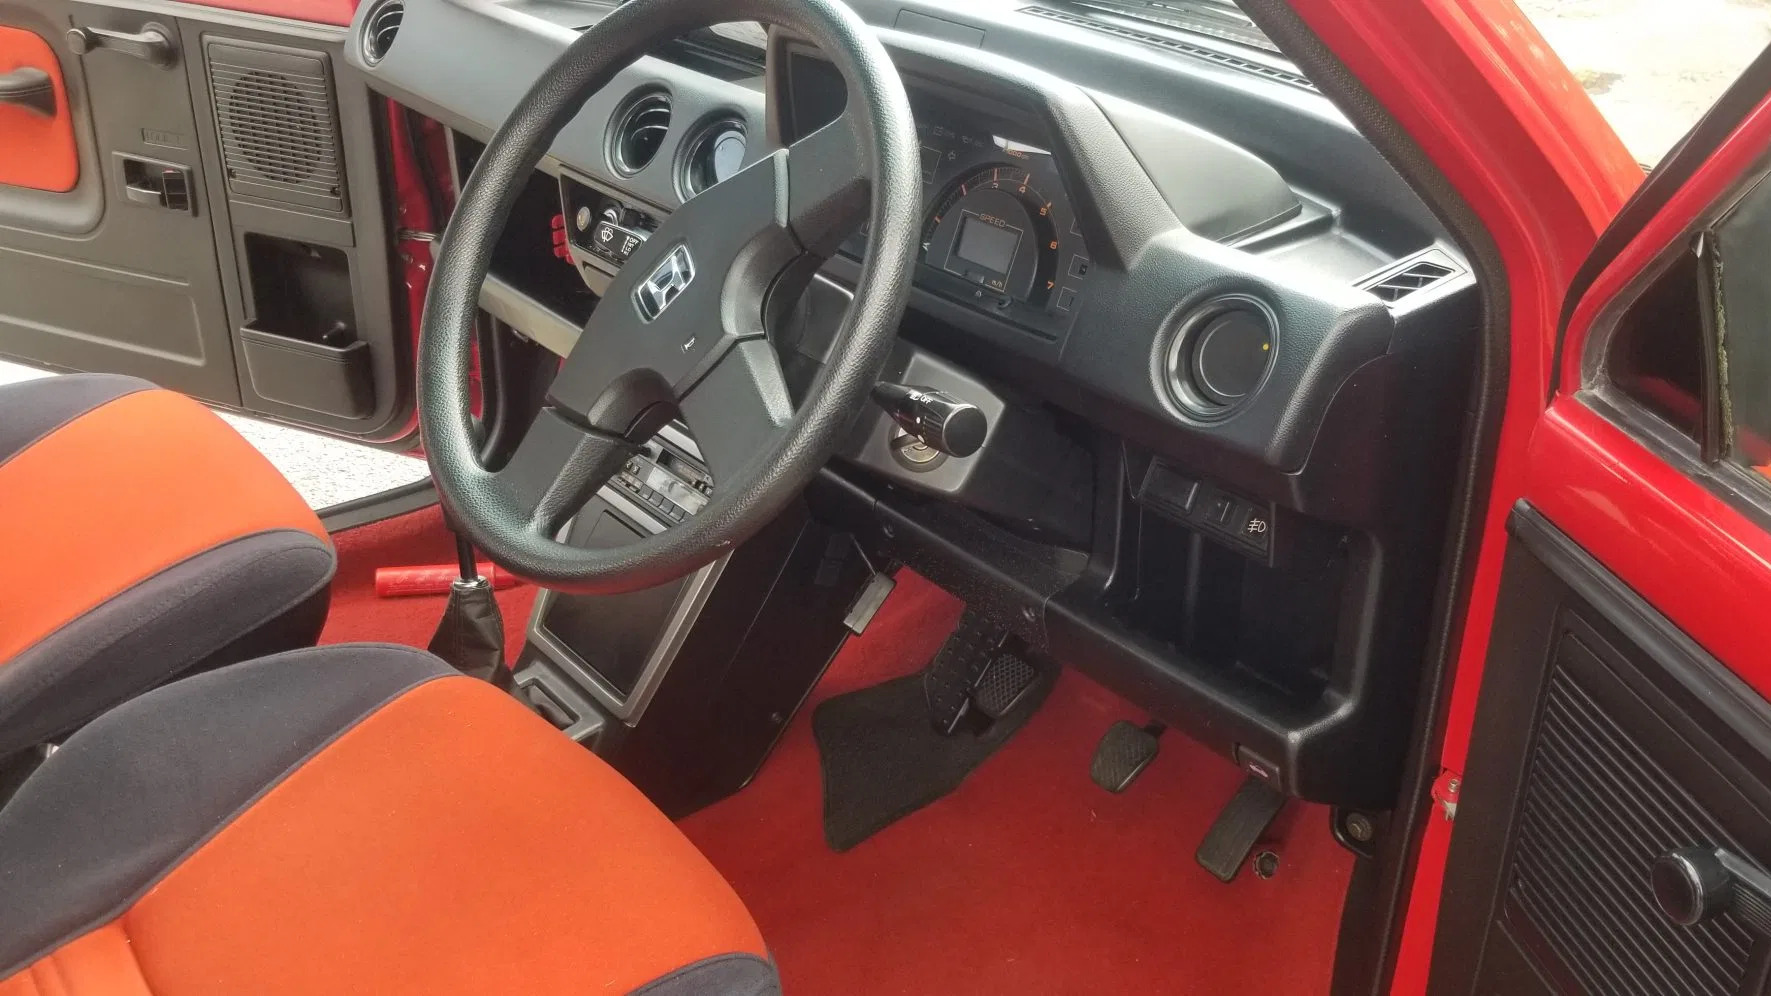 1983 Honda City Turbo interior